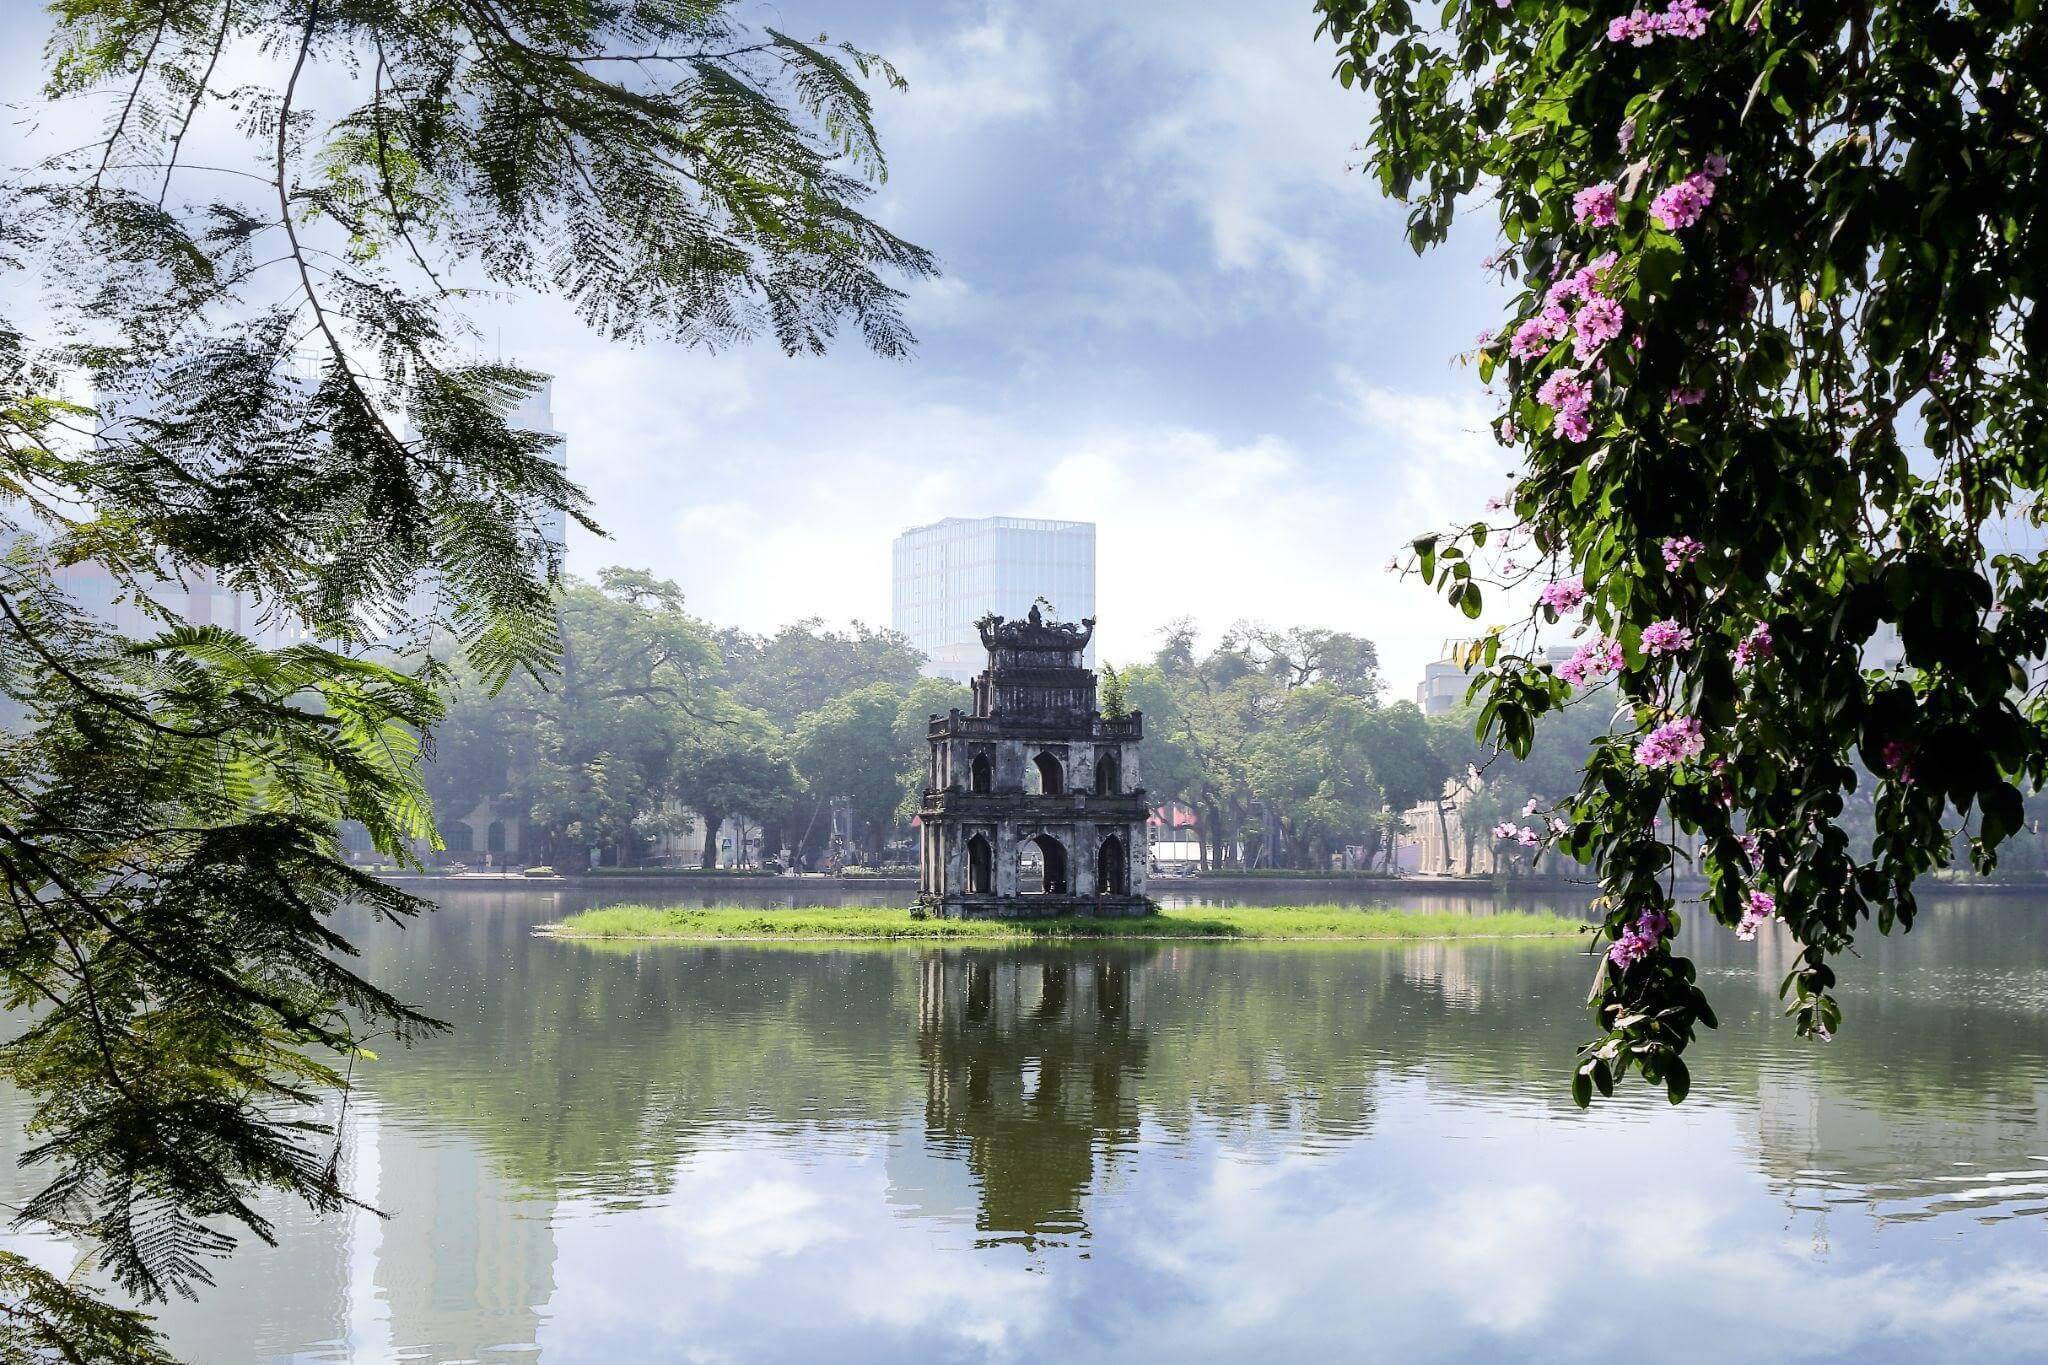 Башня ханой. Озеро Хоанкьем. Озеро Хоанкьем Ханой рисунок. Храм в центре озера Хоанкьем башня черепахи. 2rcx+r5 Хоанкьем, Ханой, Вьетнам postcode.